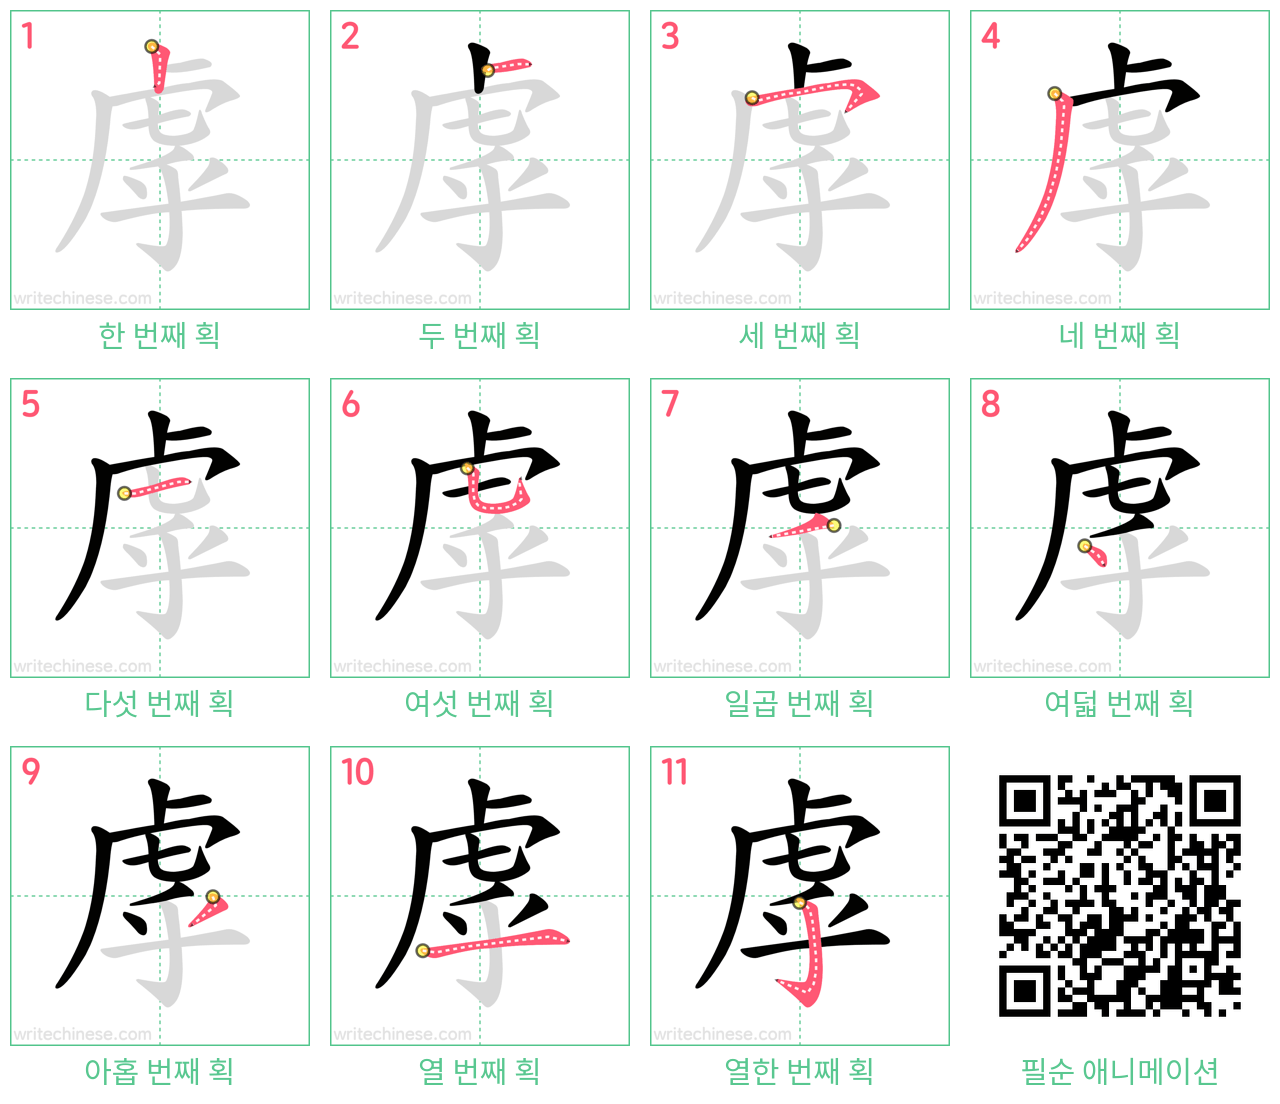 虖 step-by-step stroke order diagrams